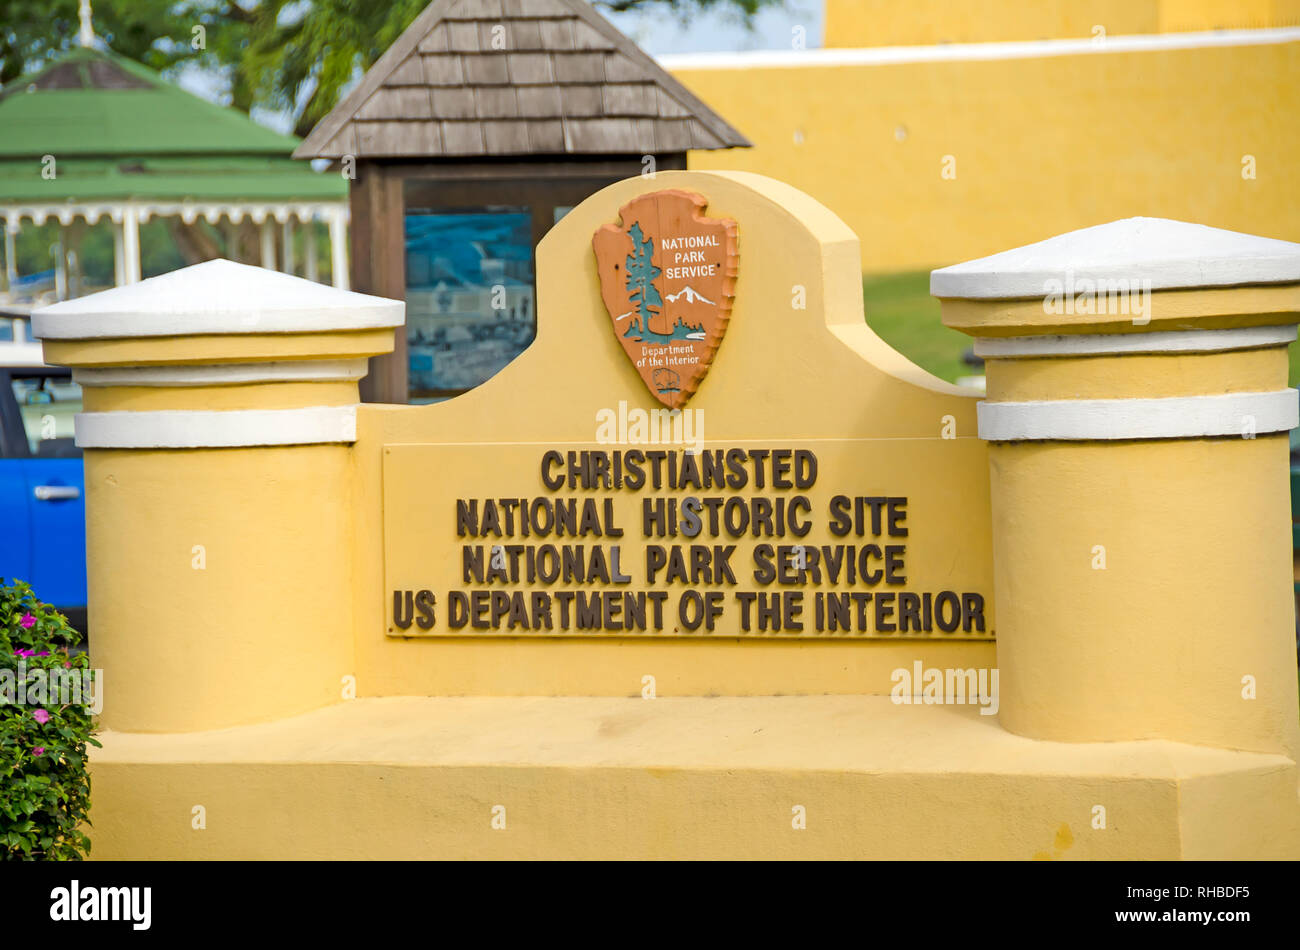 Christiansted National Historic Site del Servicio de Parques Nacionales del Departamento del Interior de EE.UU signo marcador, Saint Croix, Islas Vírgenes de EE.UU. Foto de stock